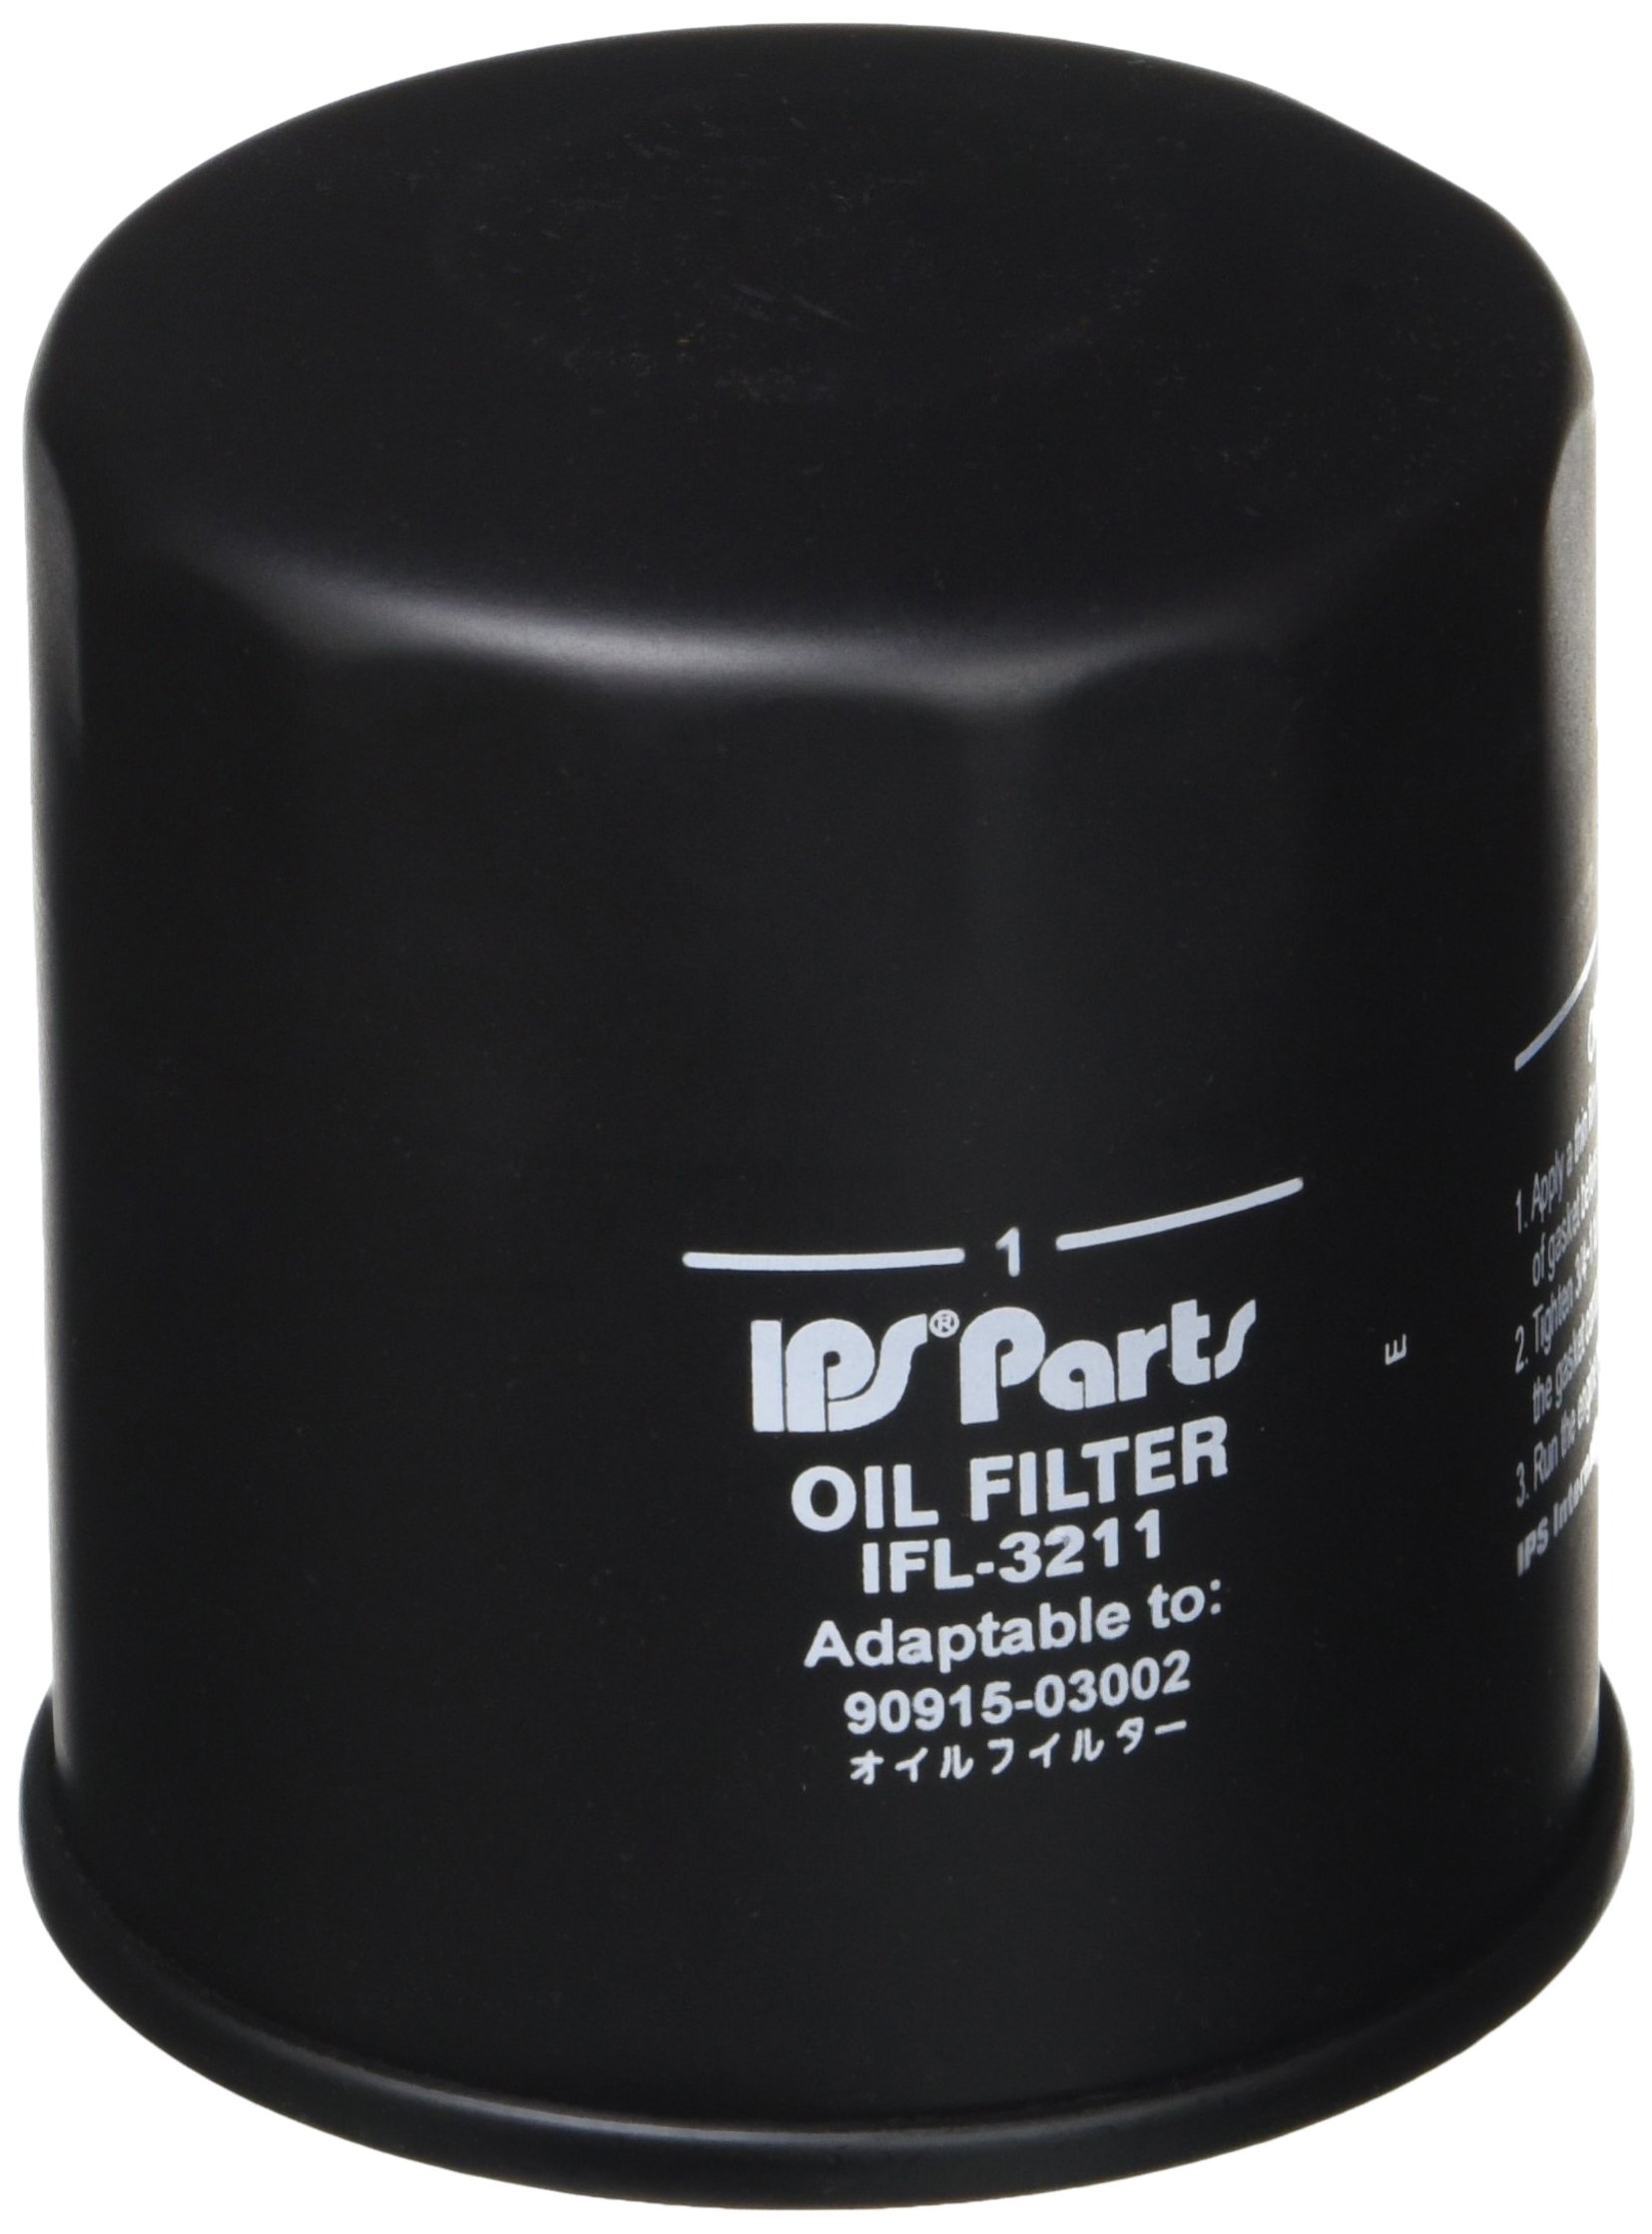 IPS Parts j|ifl-3211 Ölfilter von Ips Parts